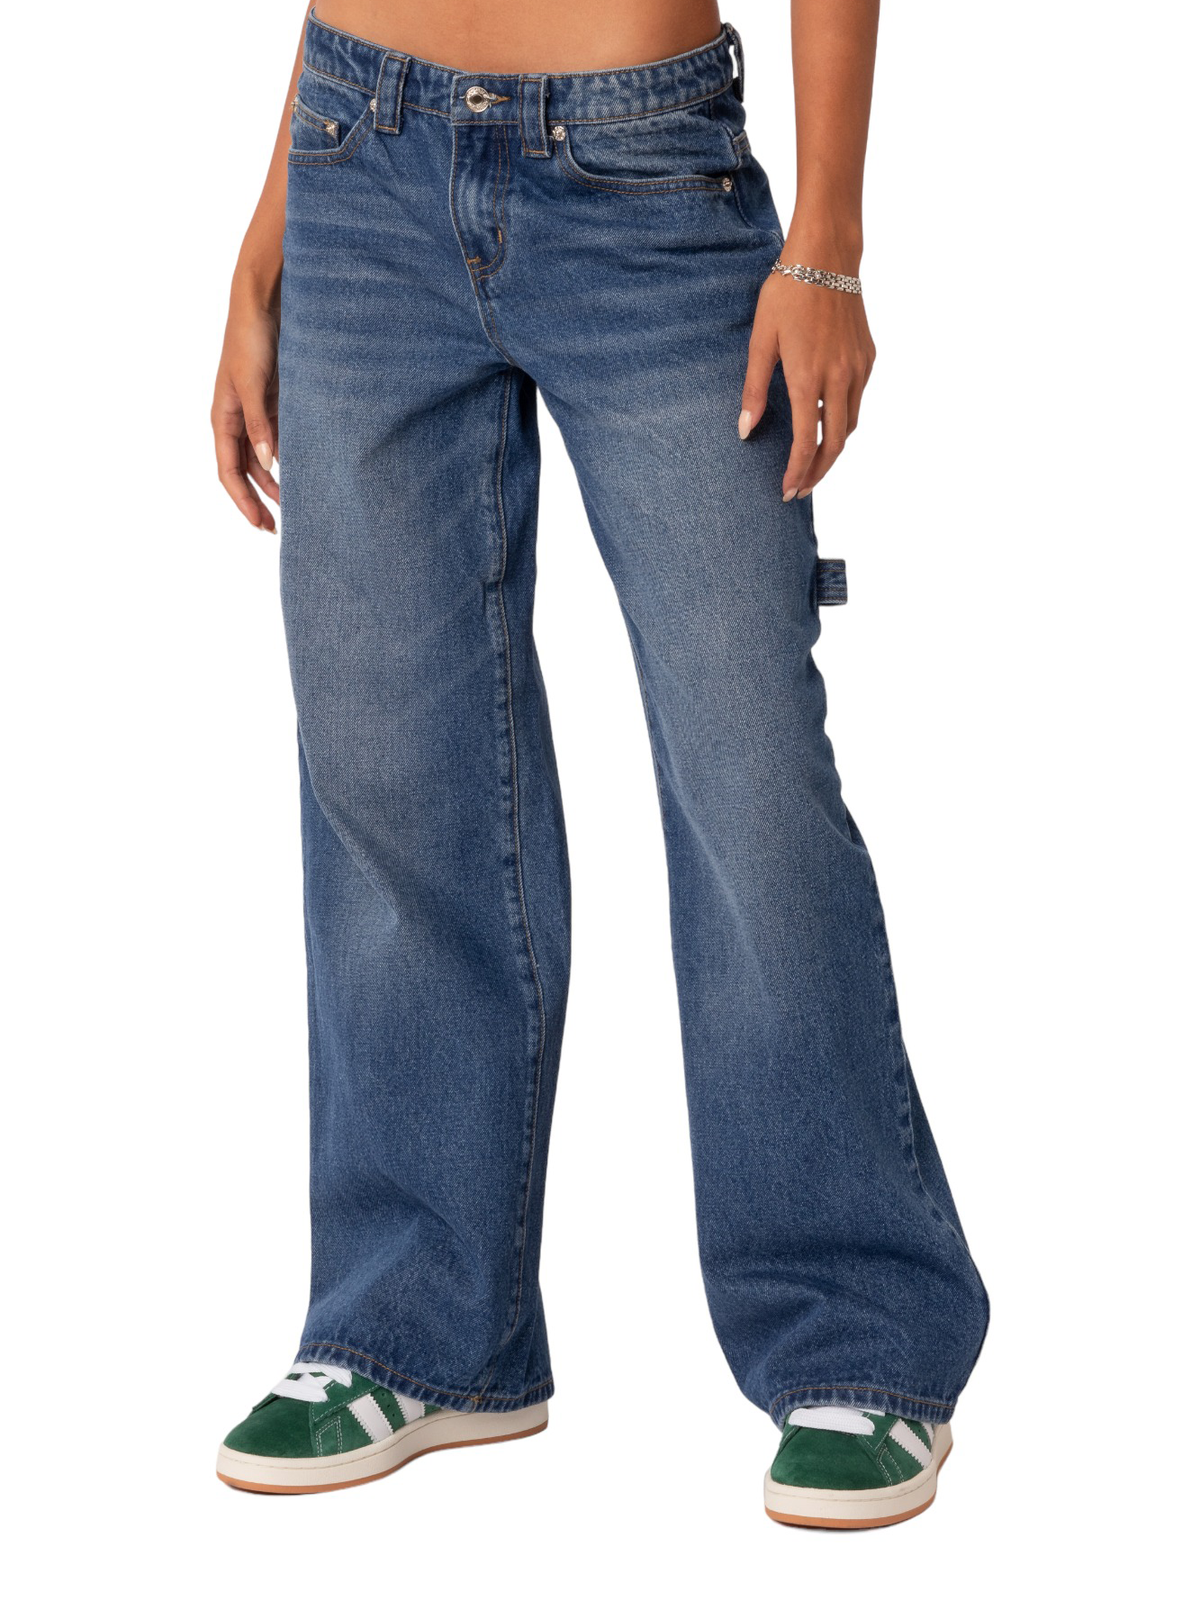 ג'ינס בגזרה נמוכה ורחבה